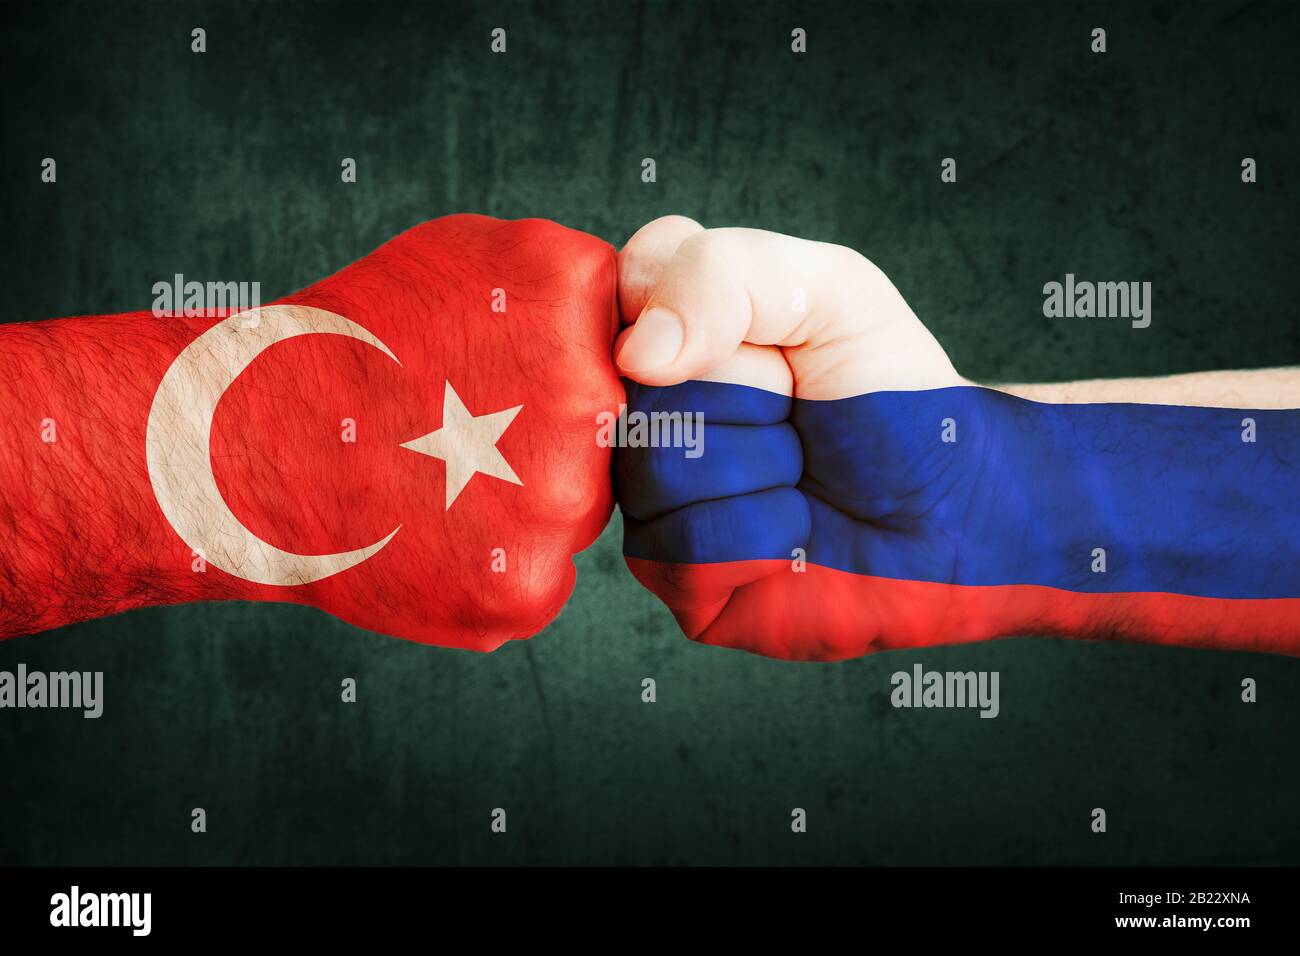 Gros plan, drapeaux sur le poing de la Turquie contre la Syrie sur un fond de mur noir. Concept de crise de guerre et de conflits politiques entre nations Banque D'Images